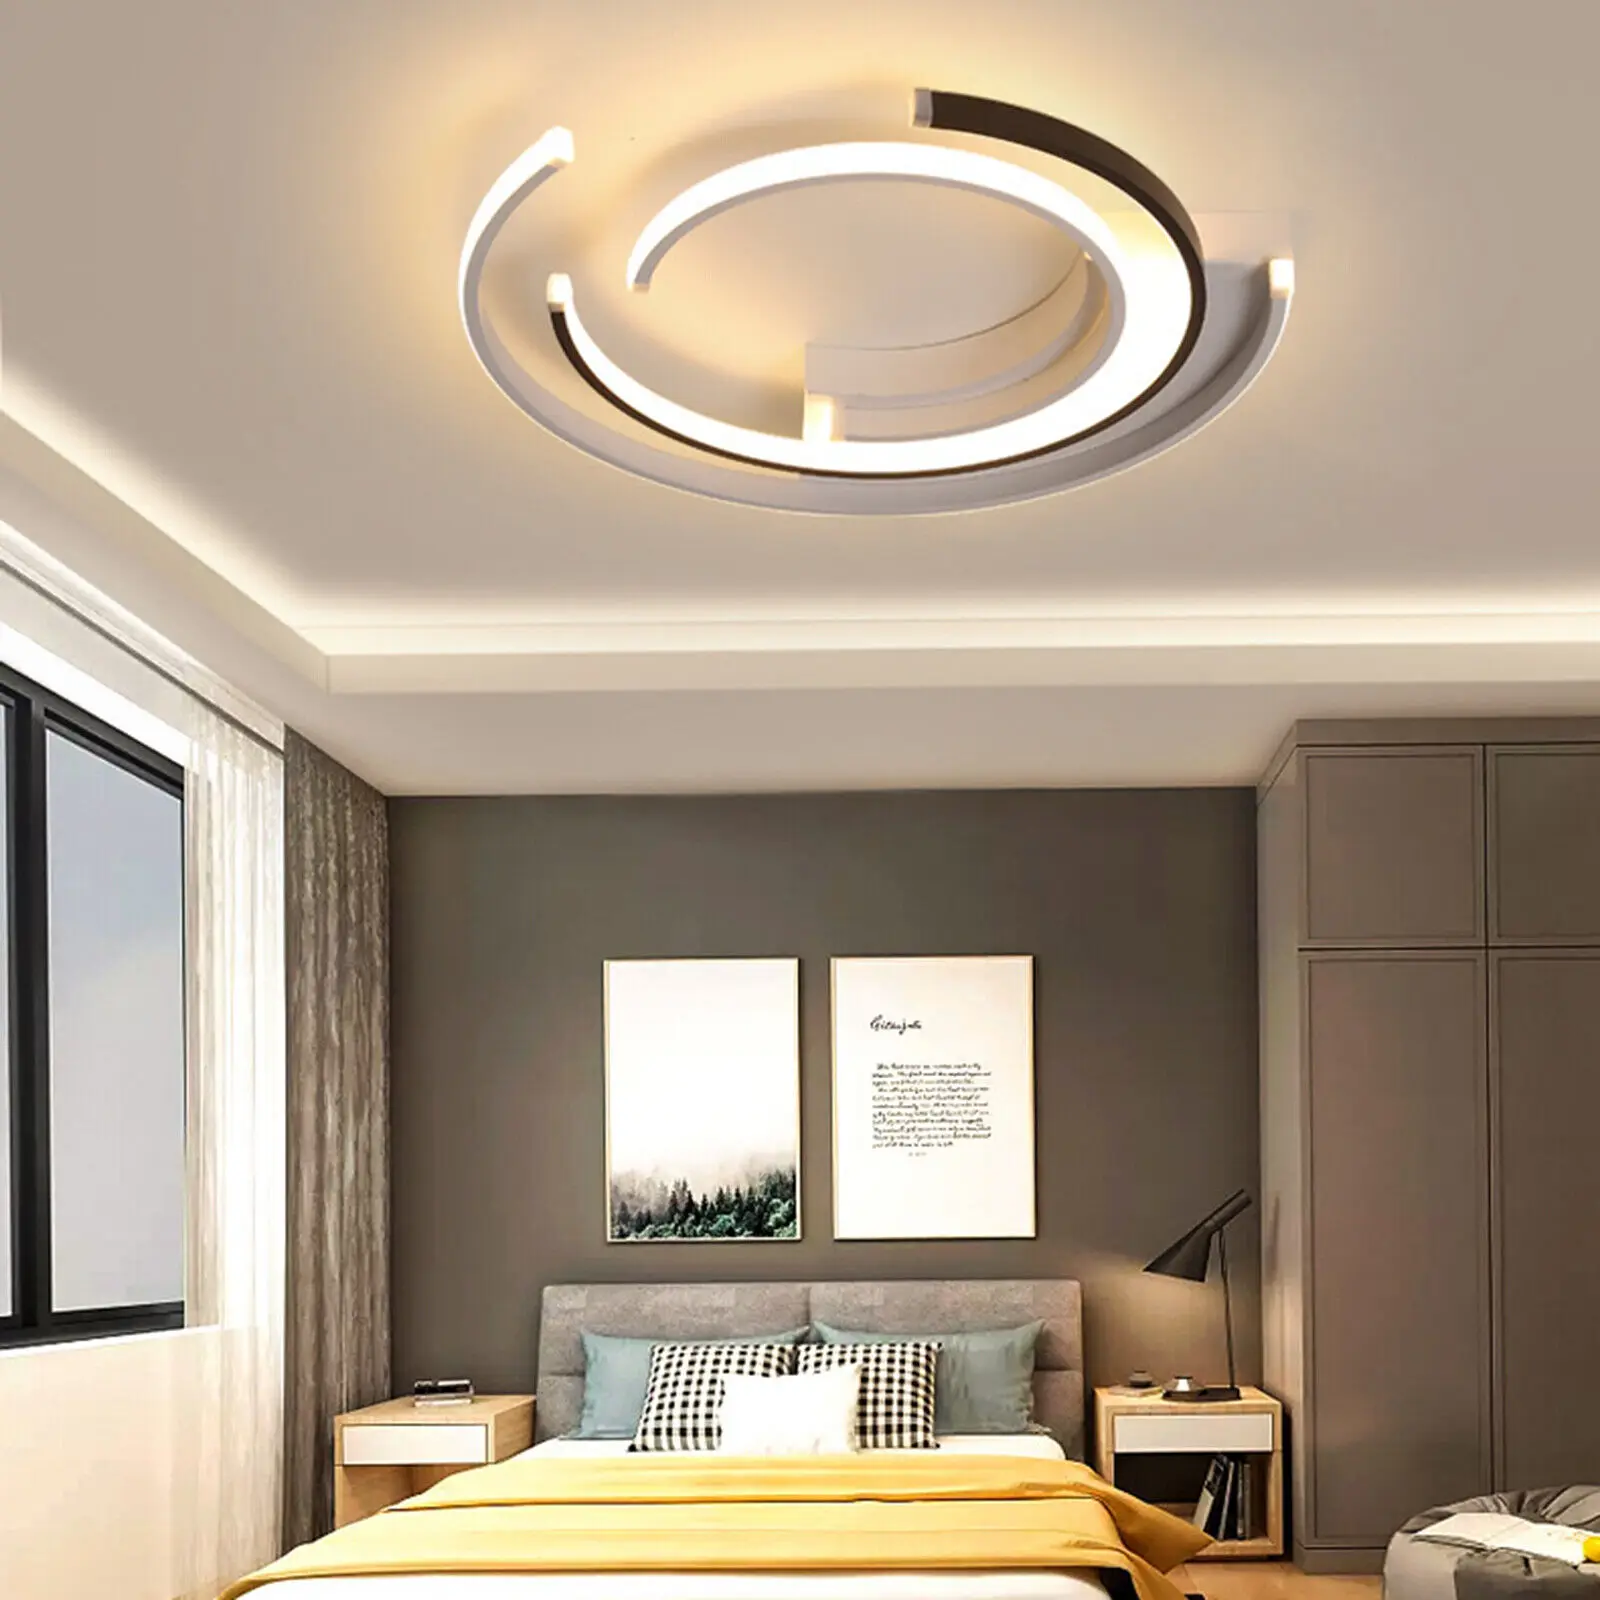 Moderno Acrílico LED Teto Lâmpada Candelabro Breve Rodada de Personalidade Quarto, Sala de Jantar Criativo dispositivo elétrico de Iluminação